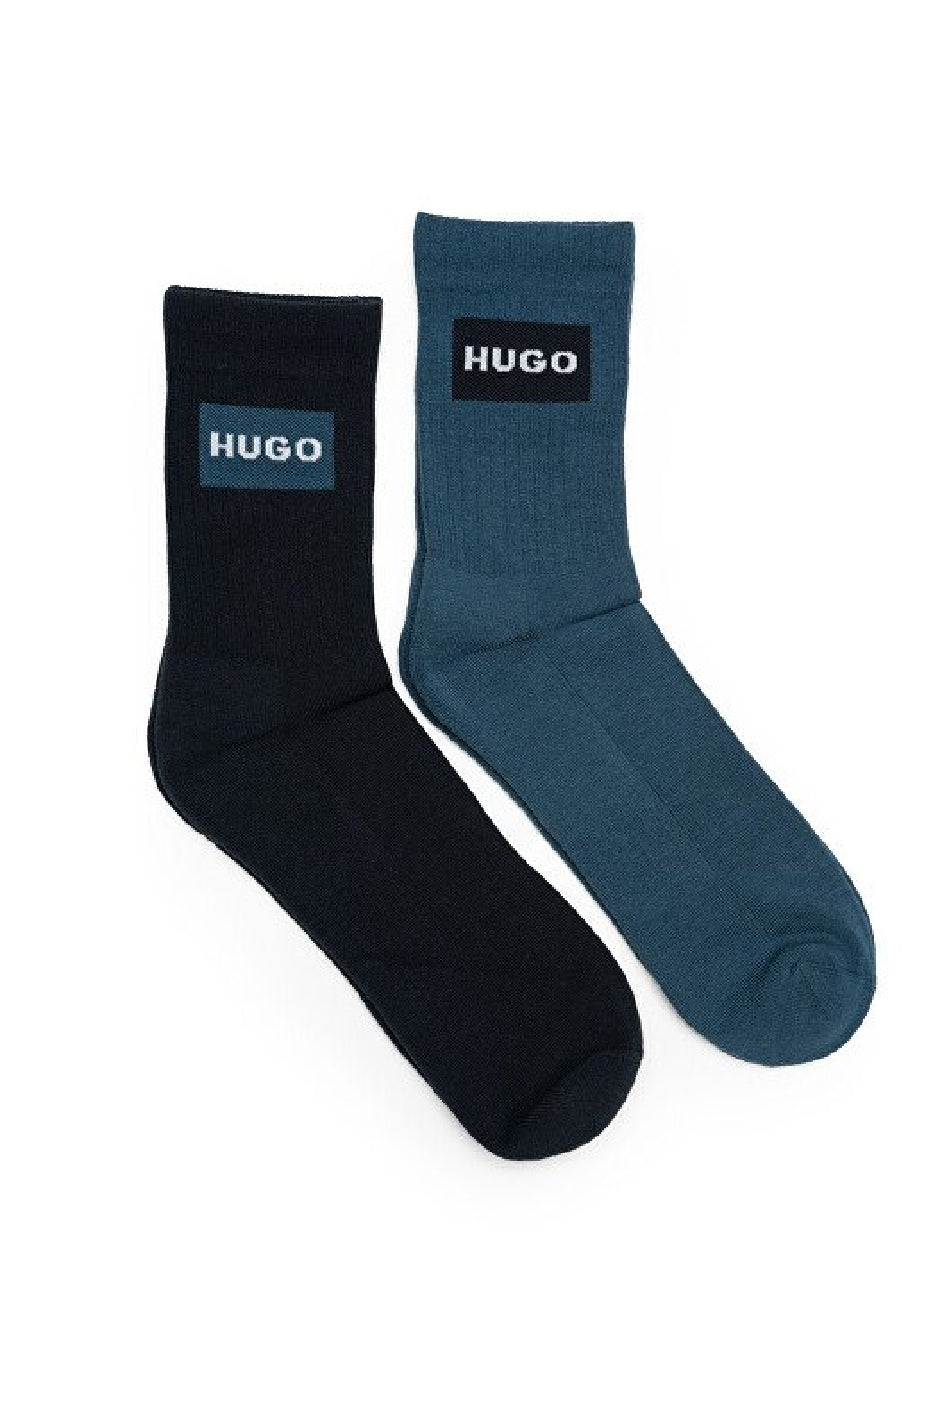 Hugo 2 Pack Men's Crew Sock